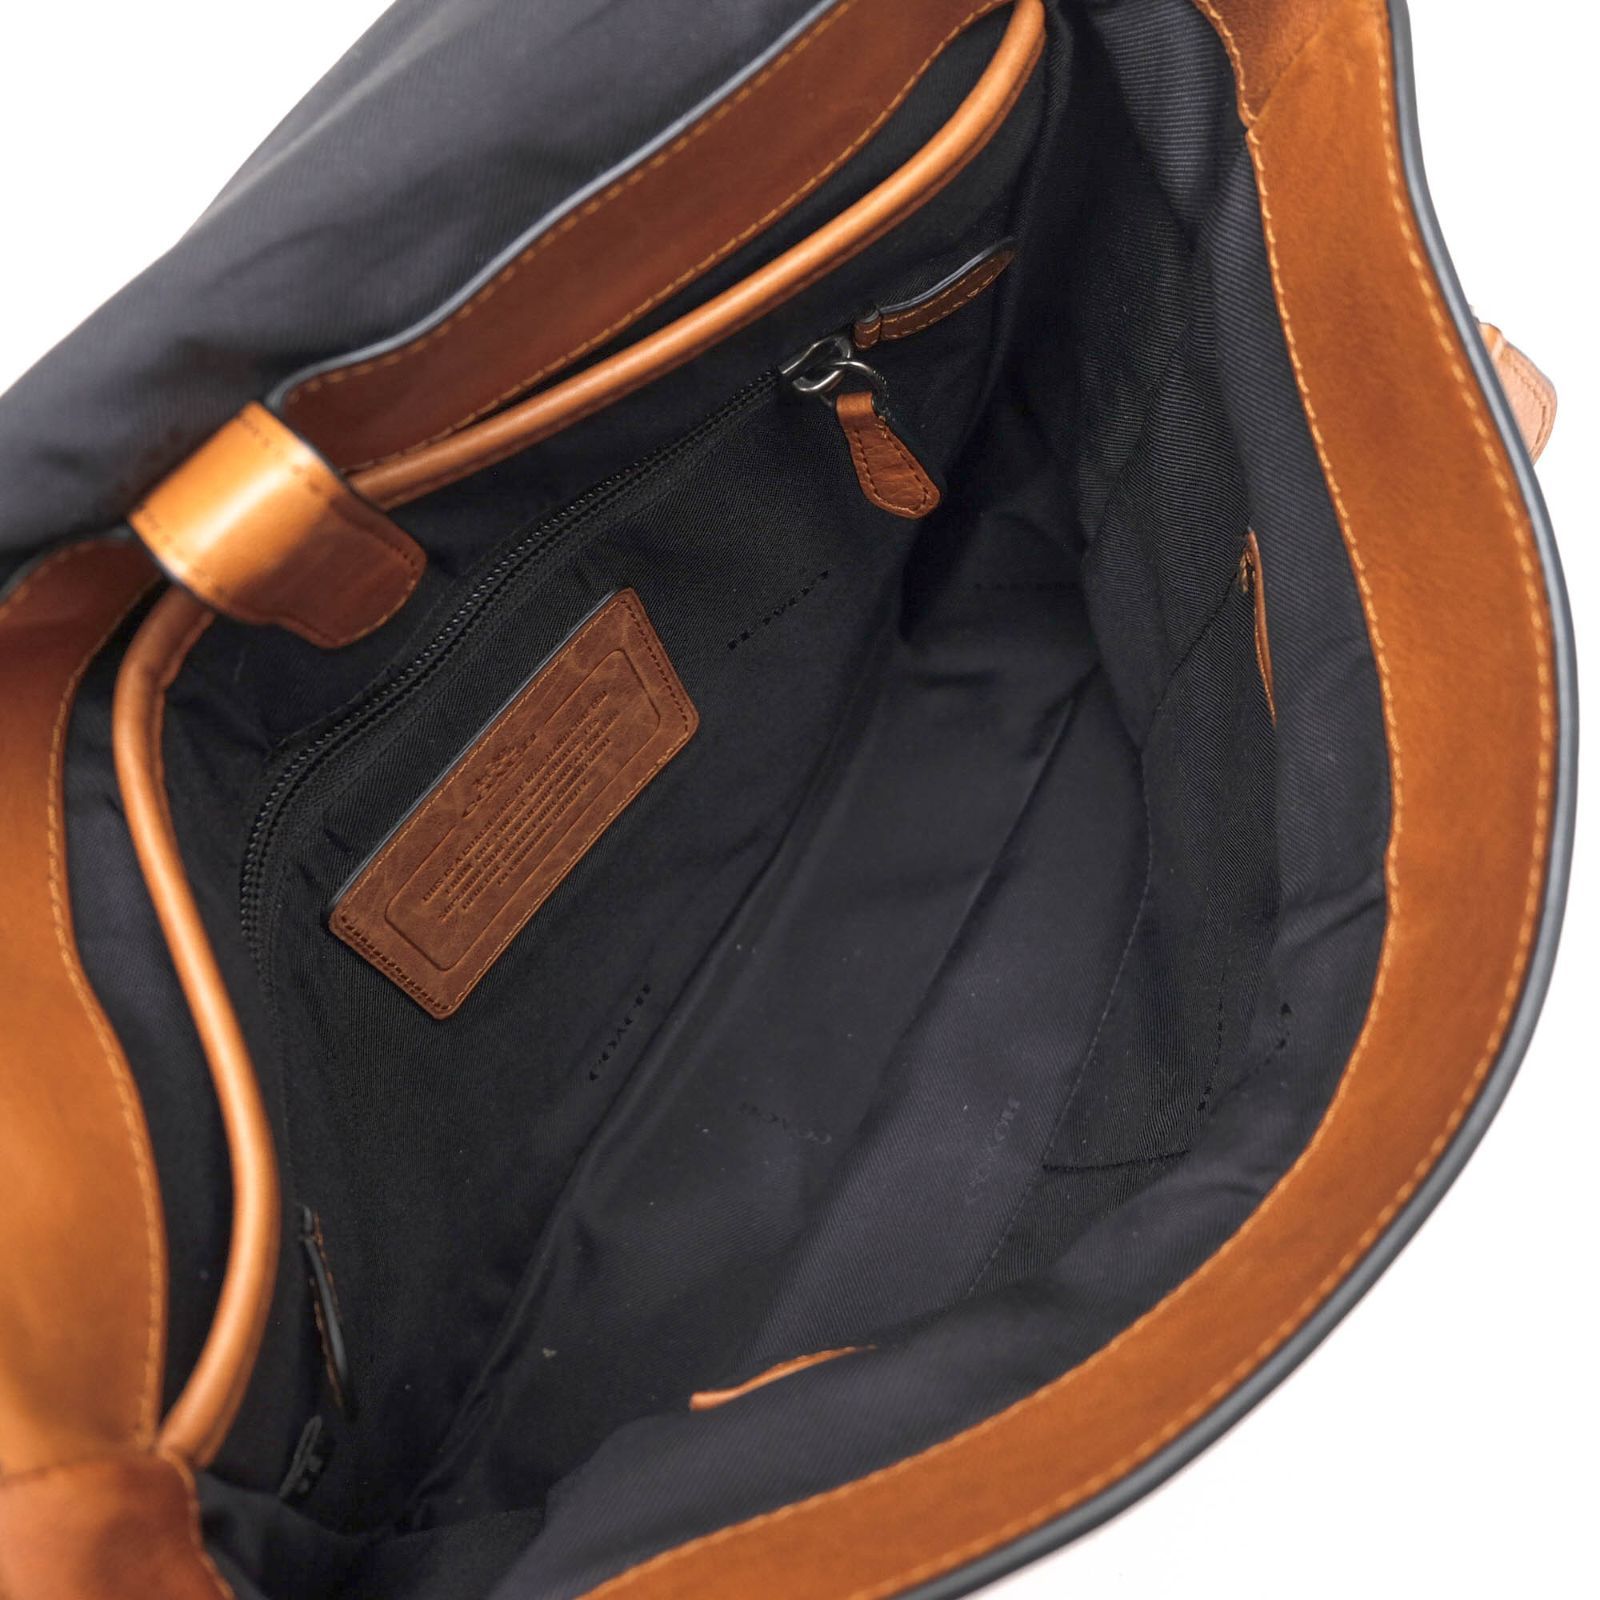 コーチ／COACH バッグ ショルダーバッグ 鞄 メンズ 男性 男性用レザー 革 本革 ブラウン 茶  72116 Metropolitan map bag メトロポリタン マップバッグ メッセンジャーバッグ